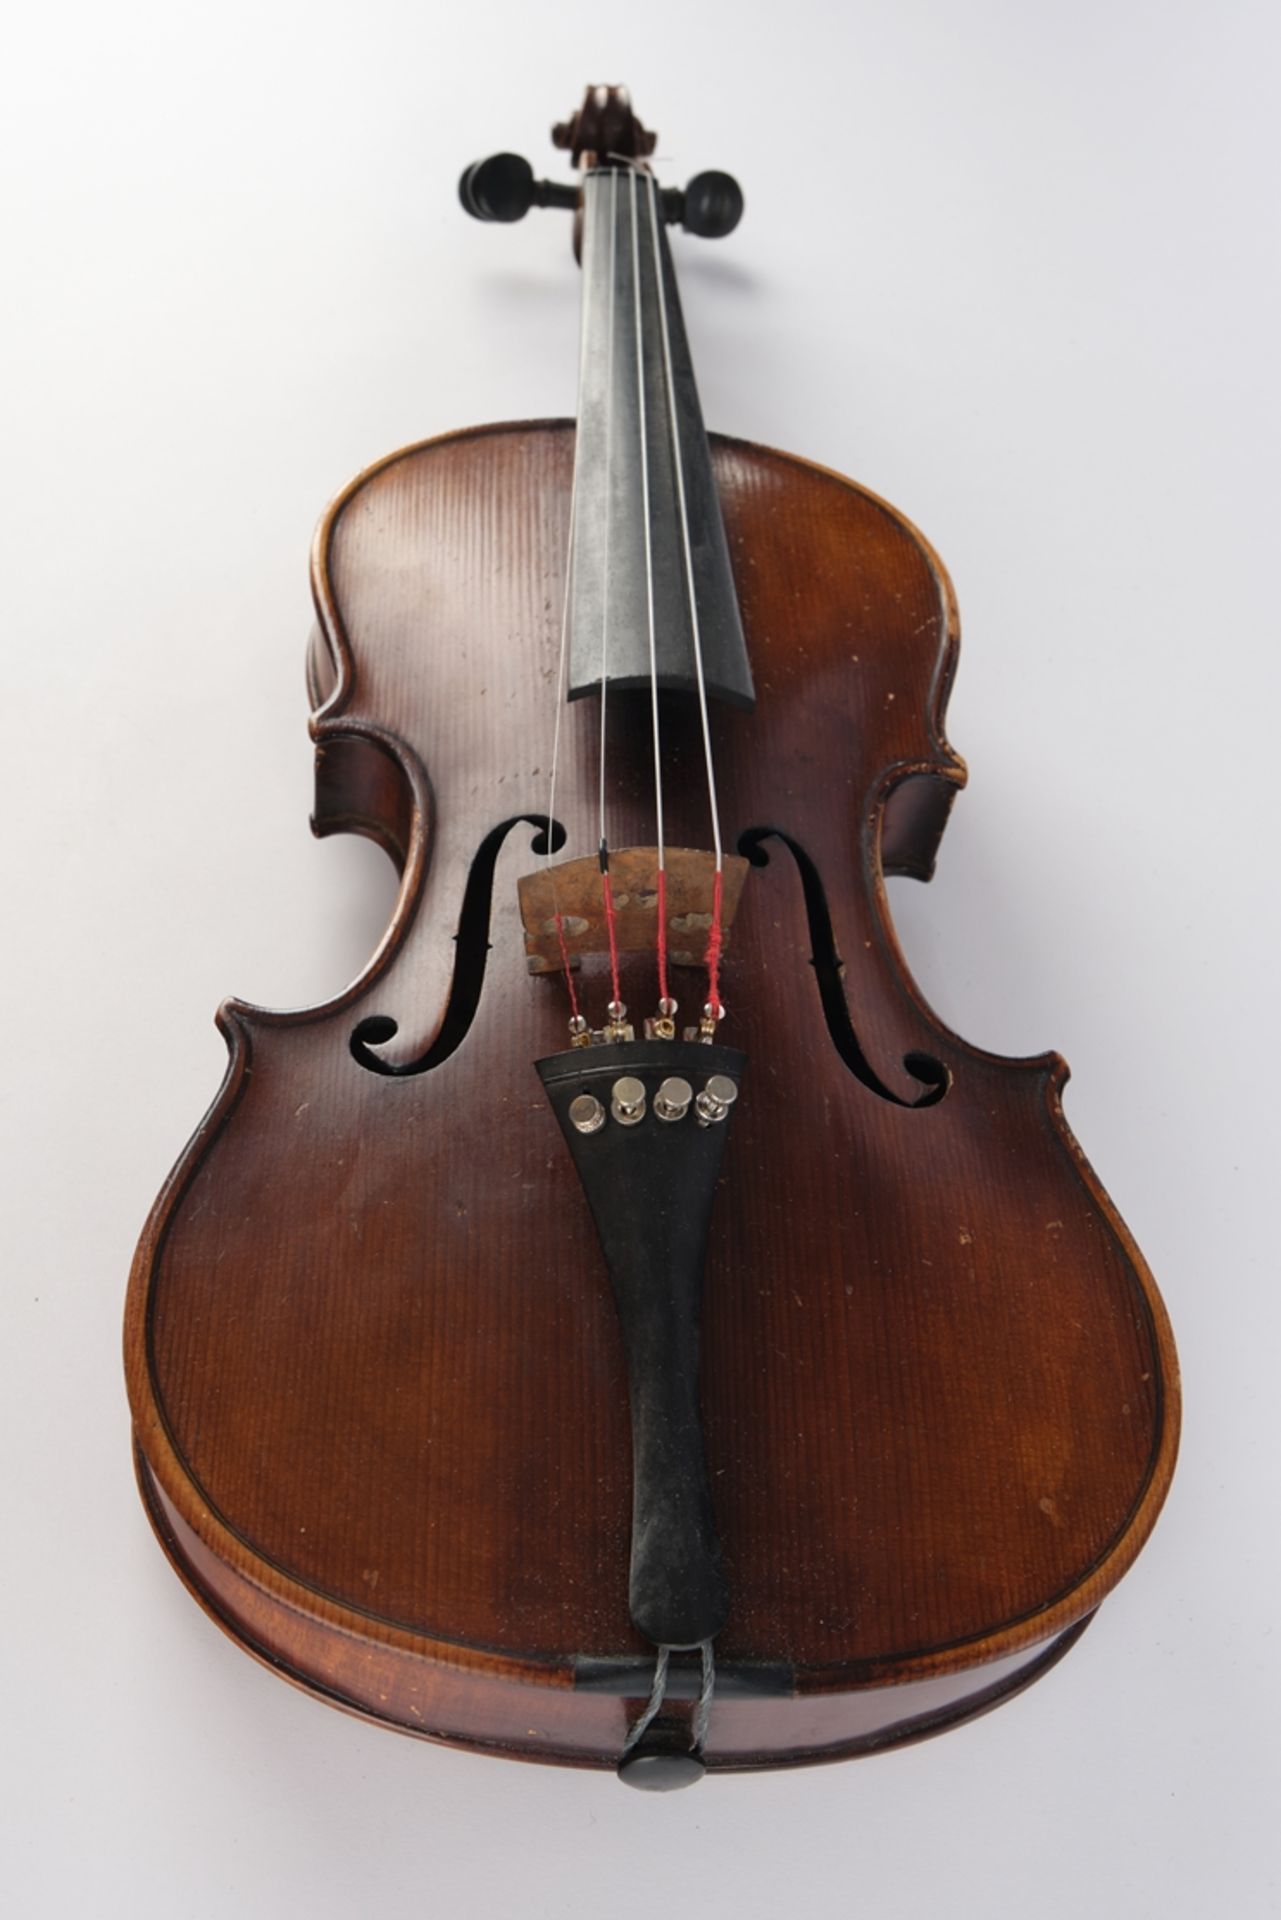 Violine, brauner Holzkorpus, unbezeichnet, 60 cm lang, mit Bogen und Koffer, Alters- und Gebrauchss - Bild 6 aus 8